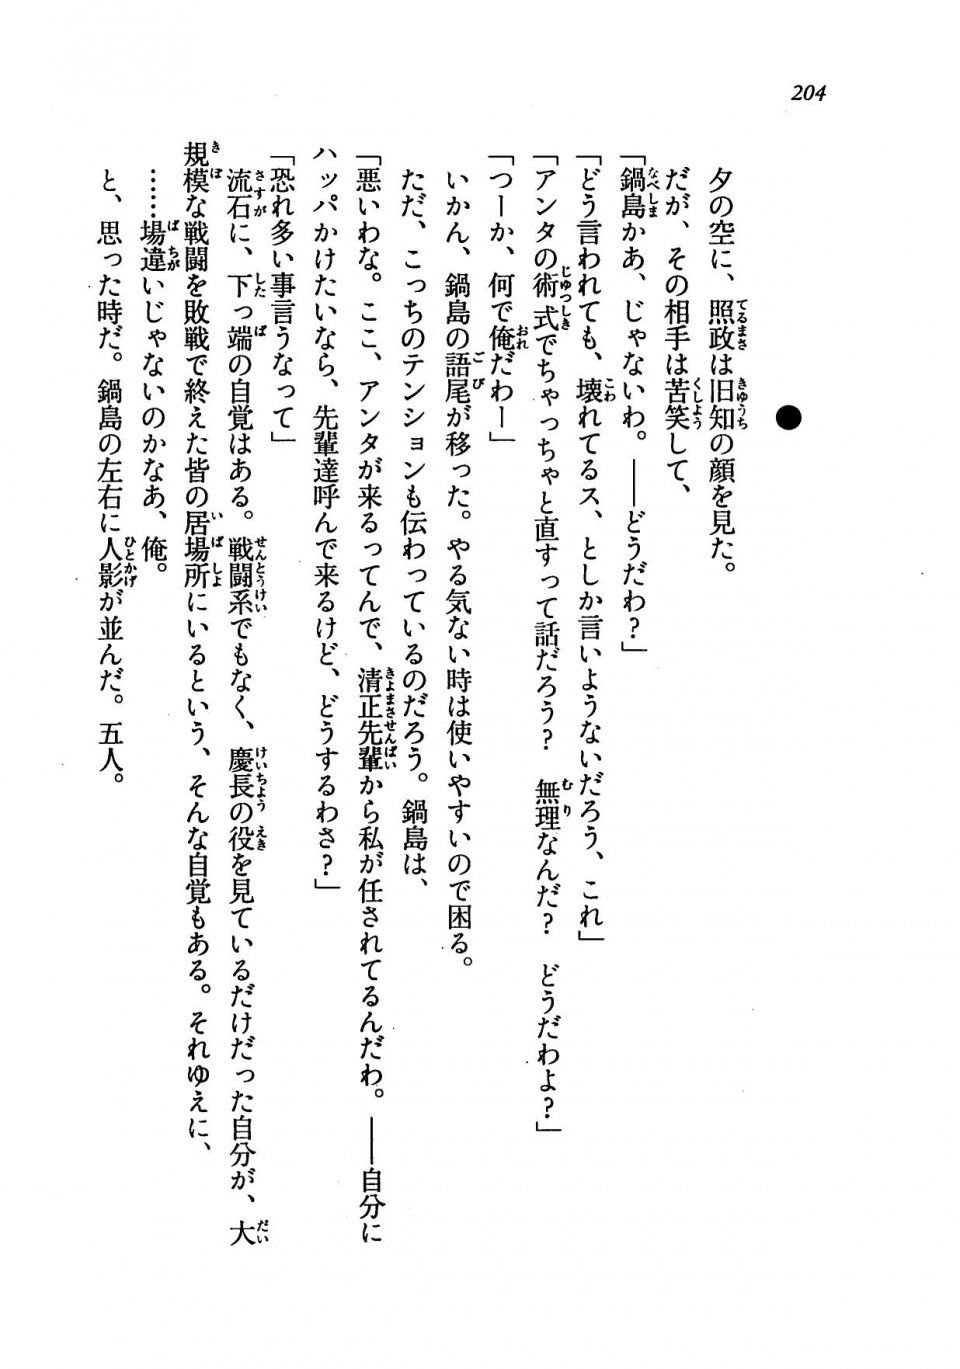 Kyoukai Senjou no Horizon LN Vol 19(8A) - Photo #204